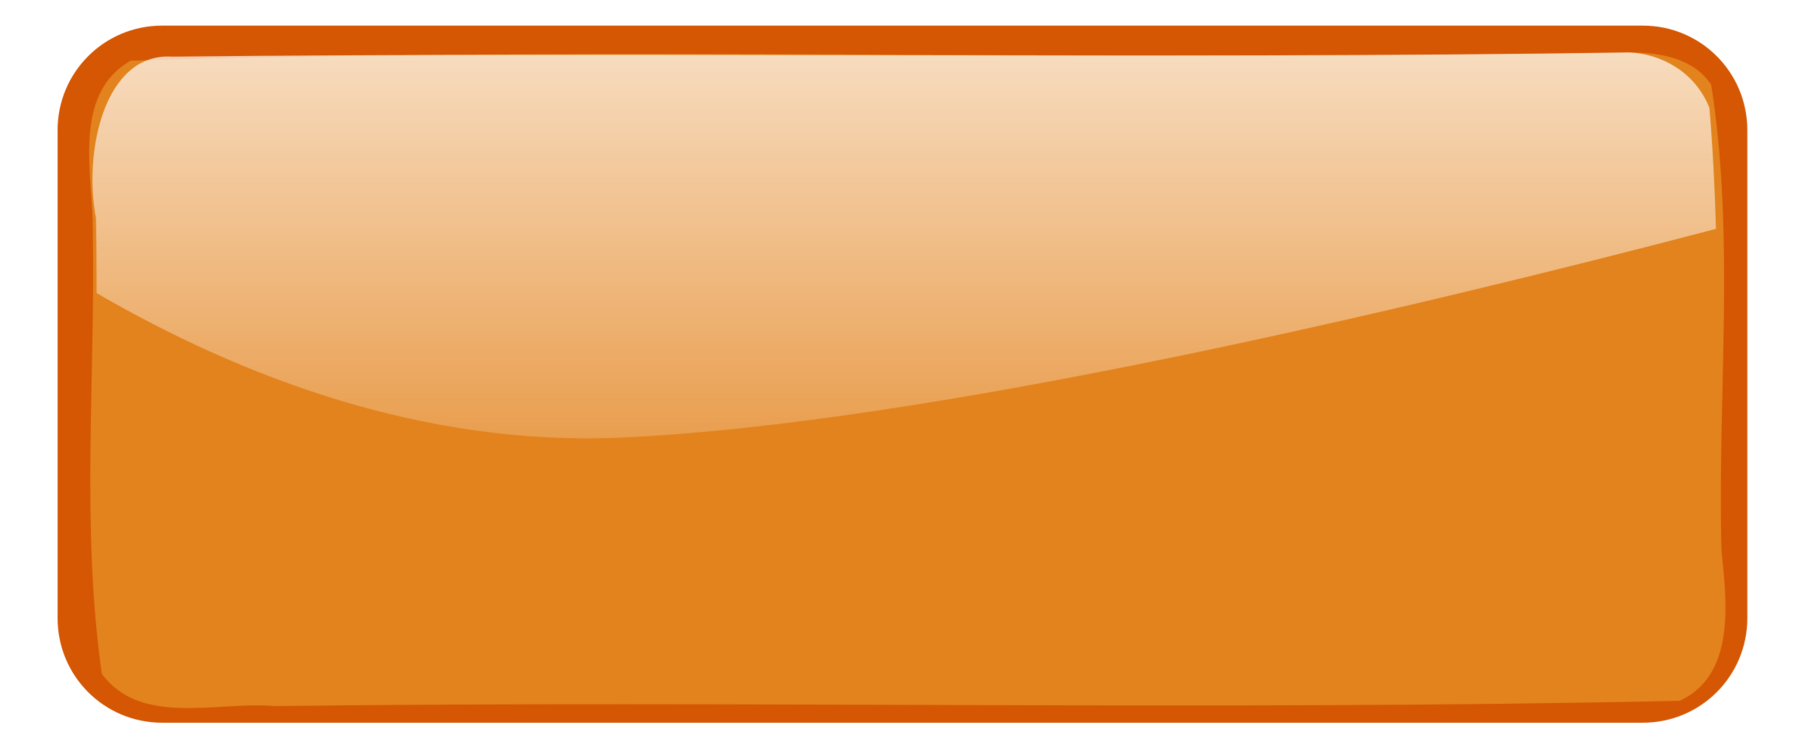 orange rectangle shape